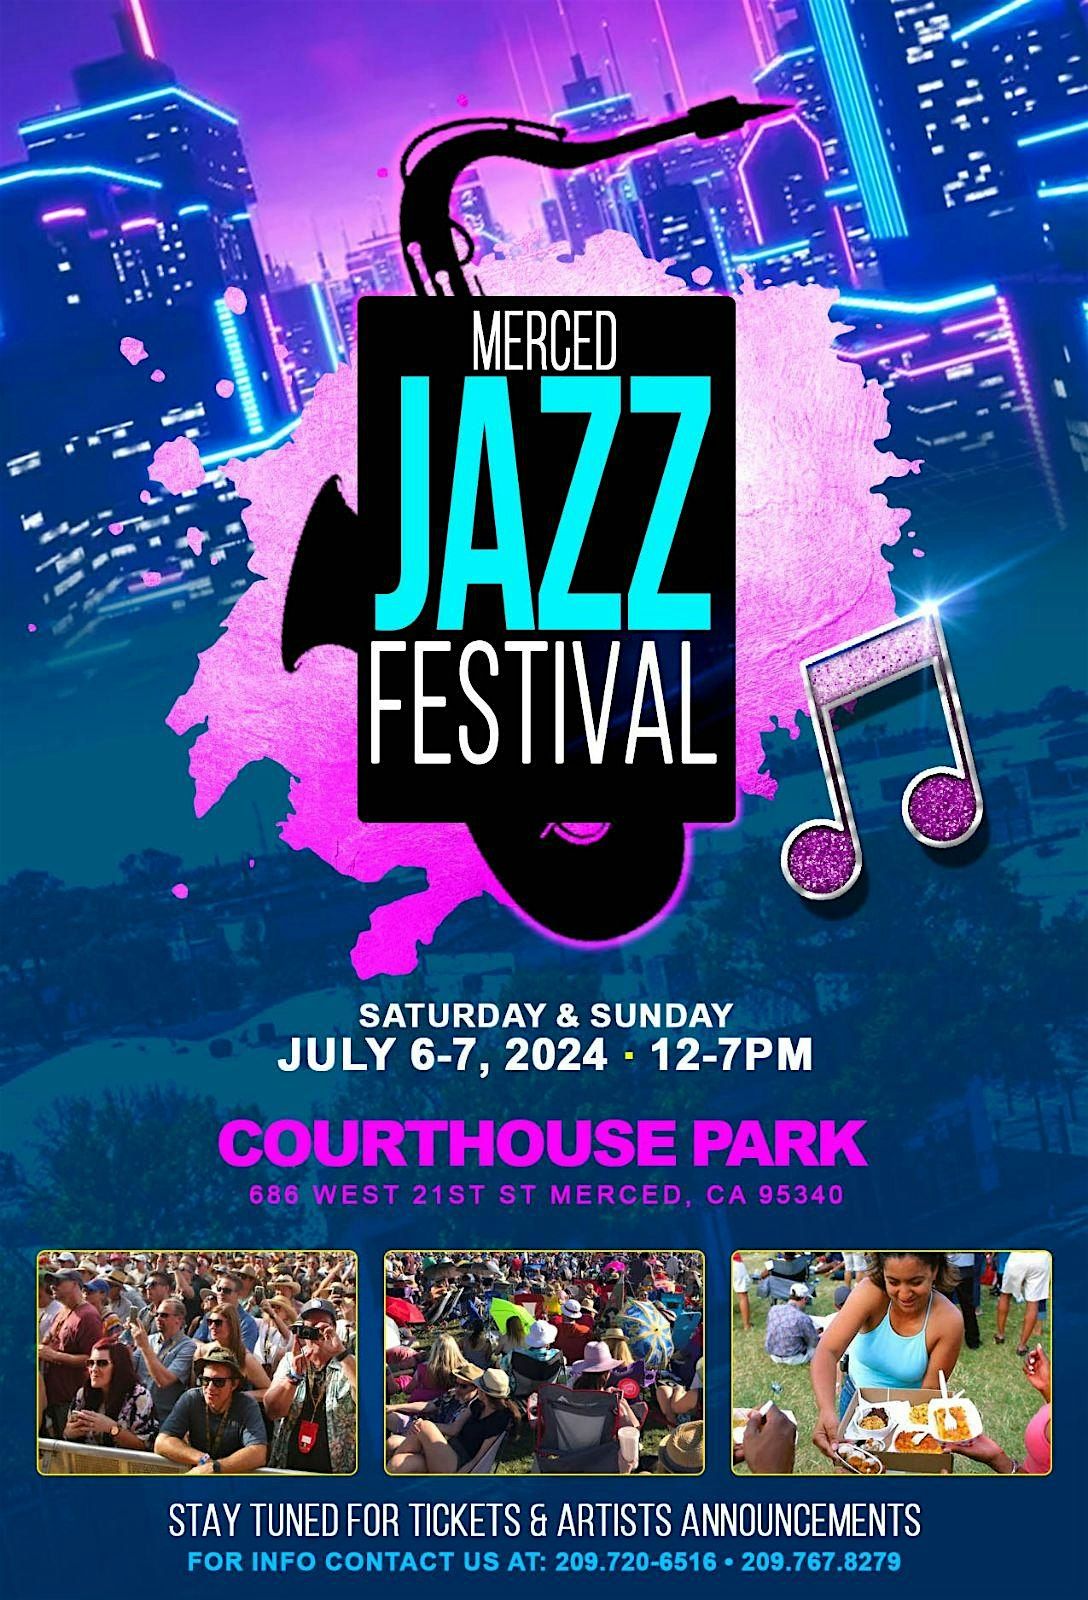 Merced Jazz Festival